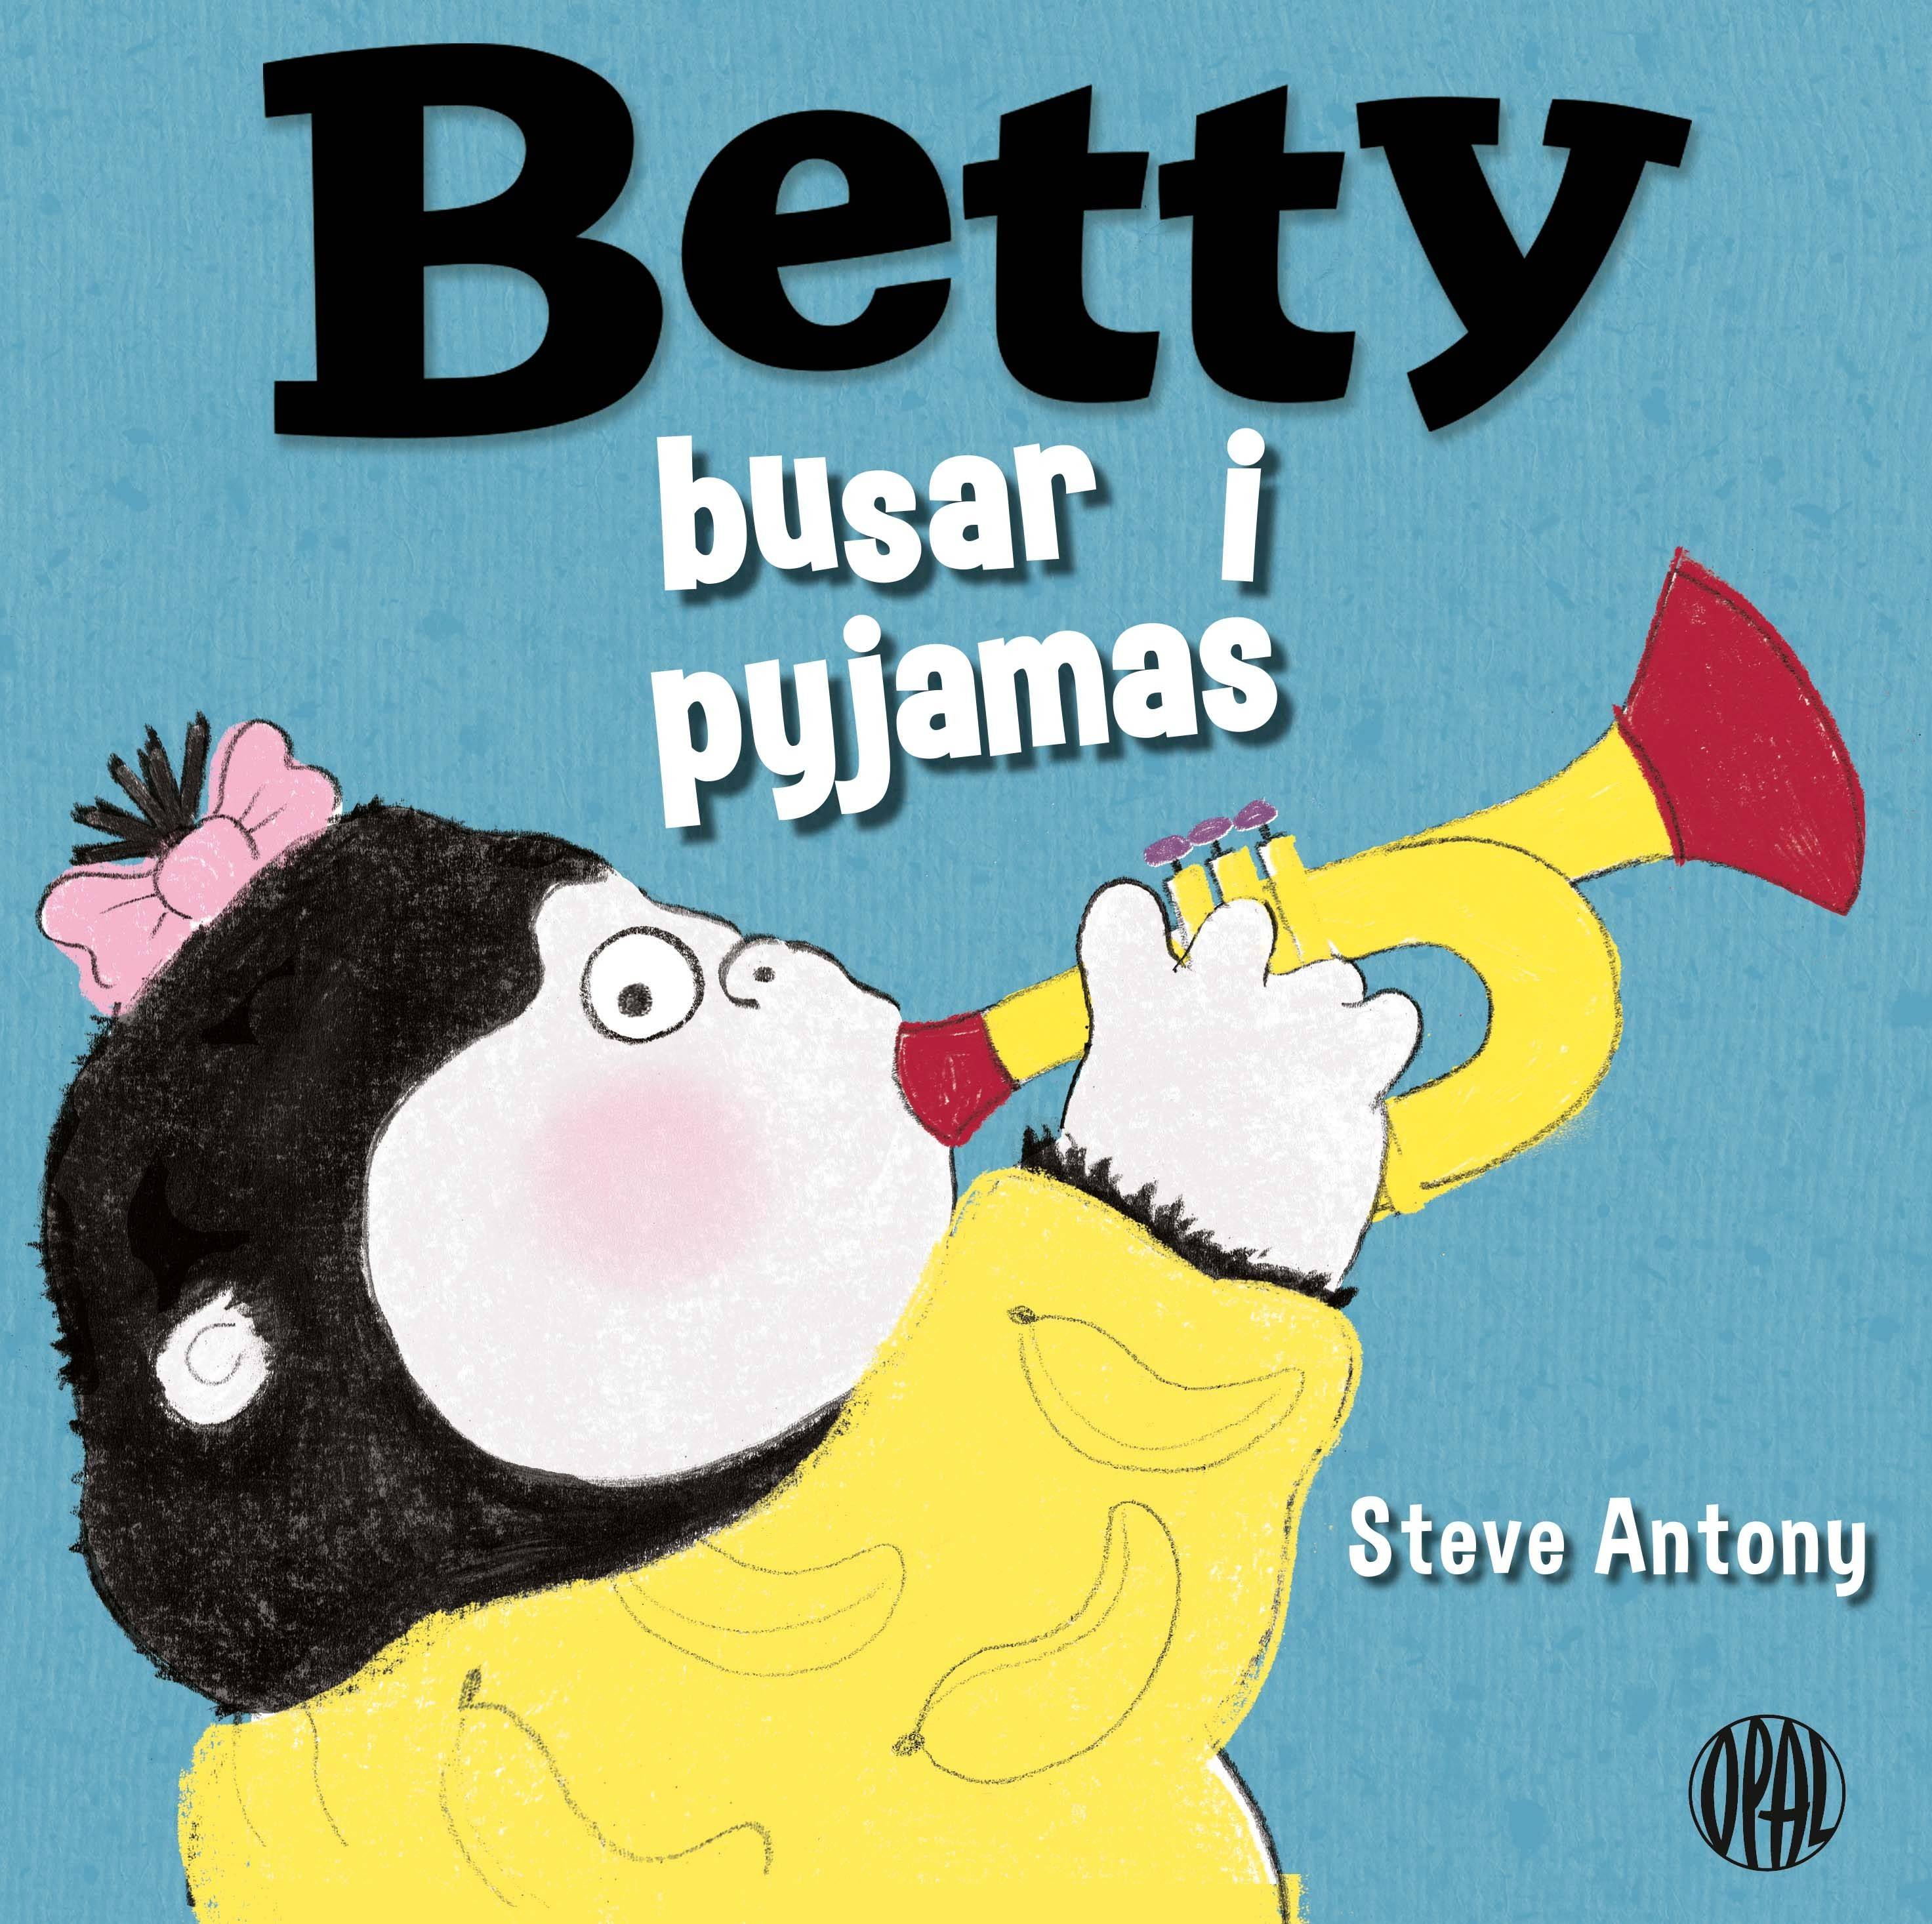 Betty busar i pyjamas